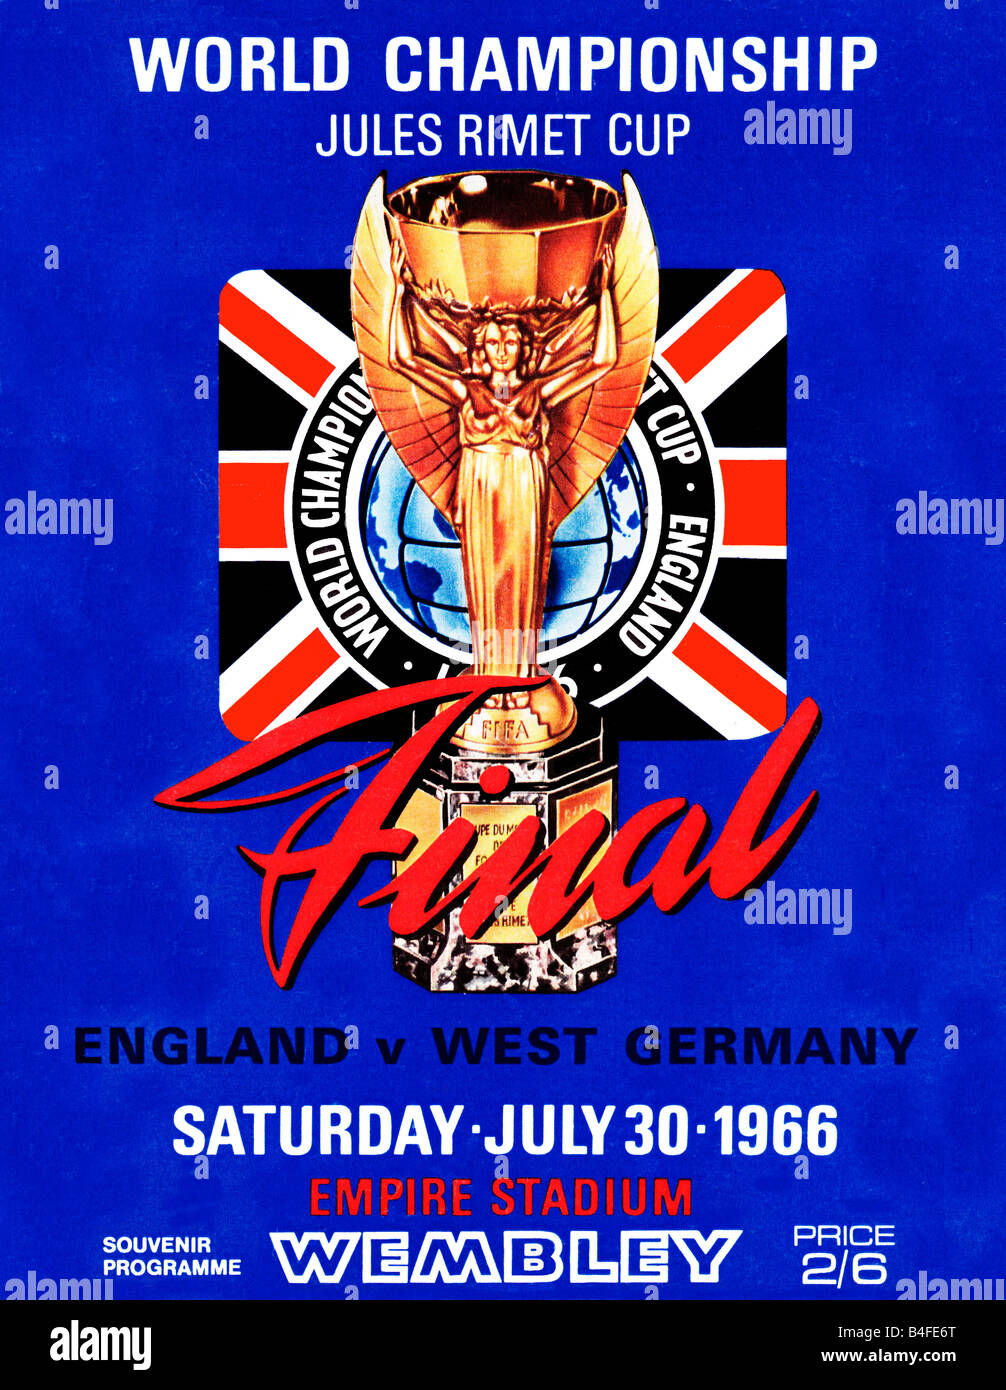 Programa de Final de la Copa del Mundo de Inglaterra contra Alemania Occidental en la final de Wembley en julio de 1966 ganó 4 2 por los anfitriones. Foto de stock